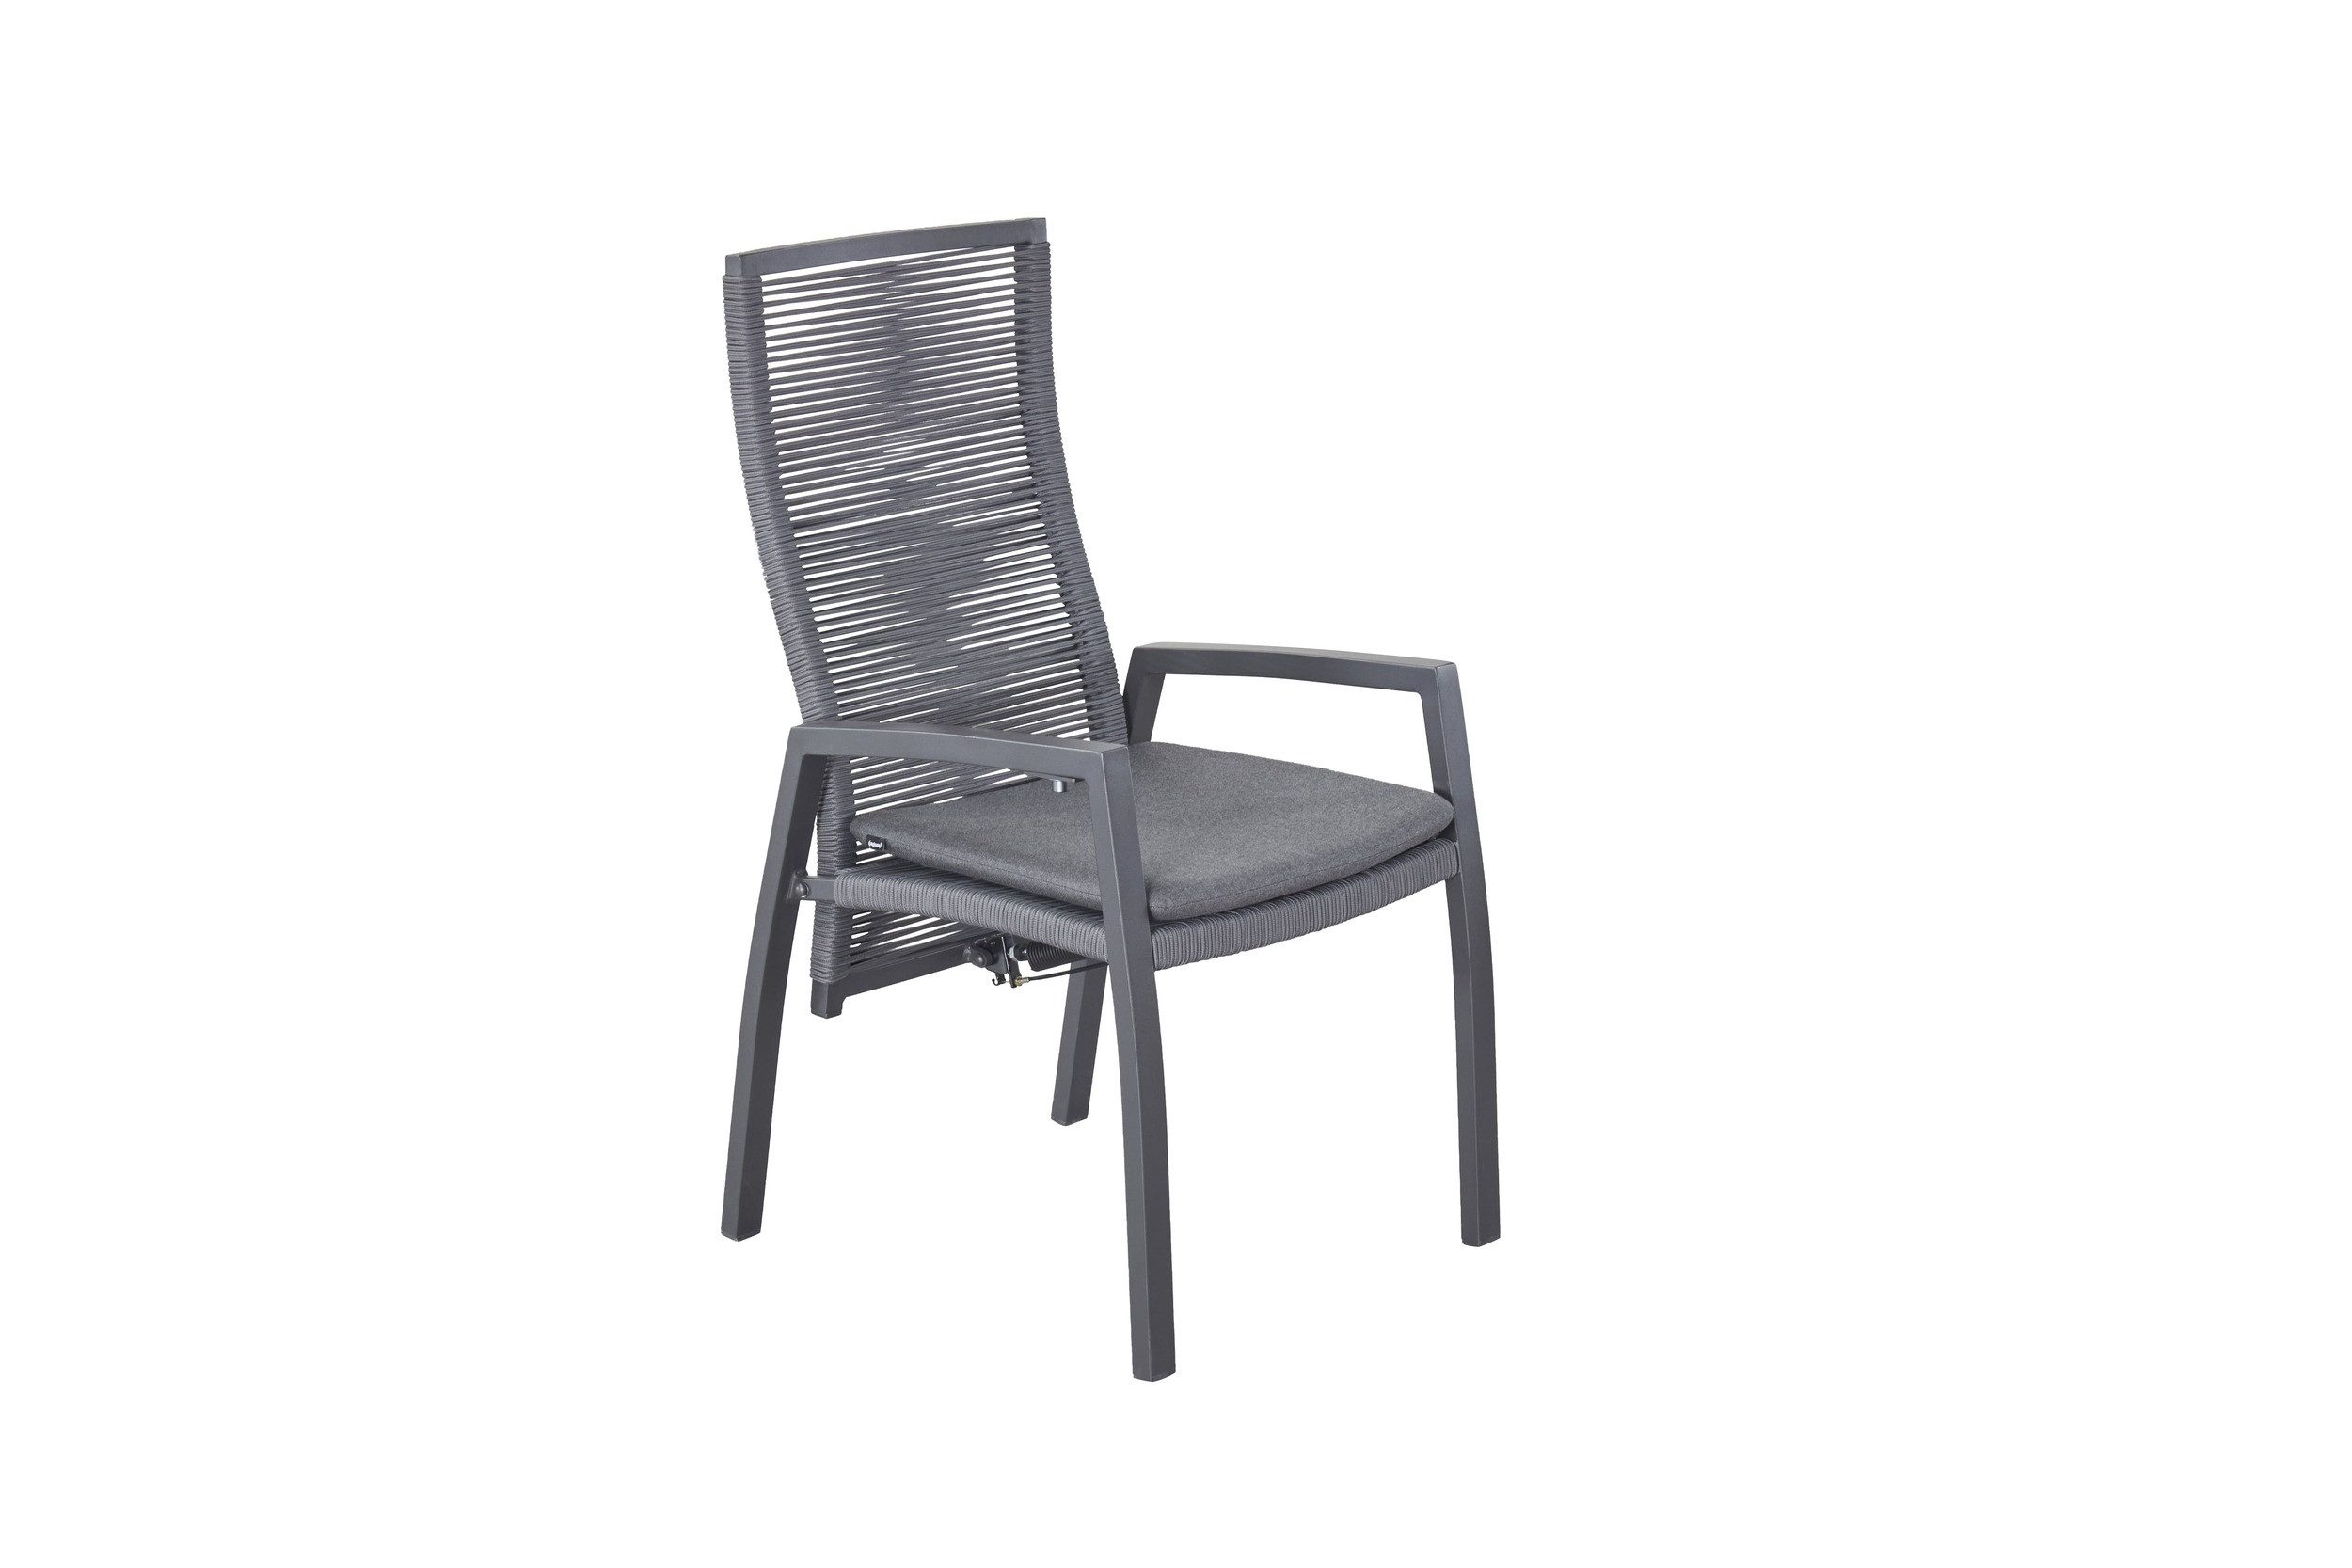 dasmöbelwerk Gartenstuhl Positionsstuhl Ohio Gartenstuhl Esstischstuhl mit Sitzkissen grau, verstellbarer Rückenlehne